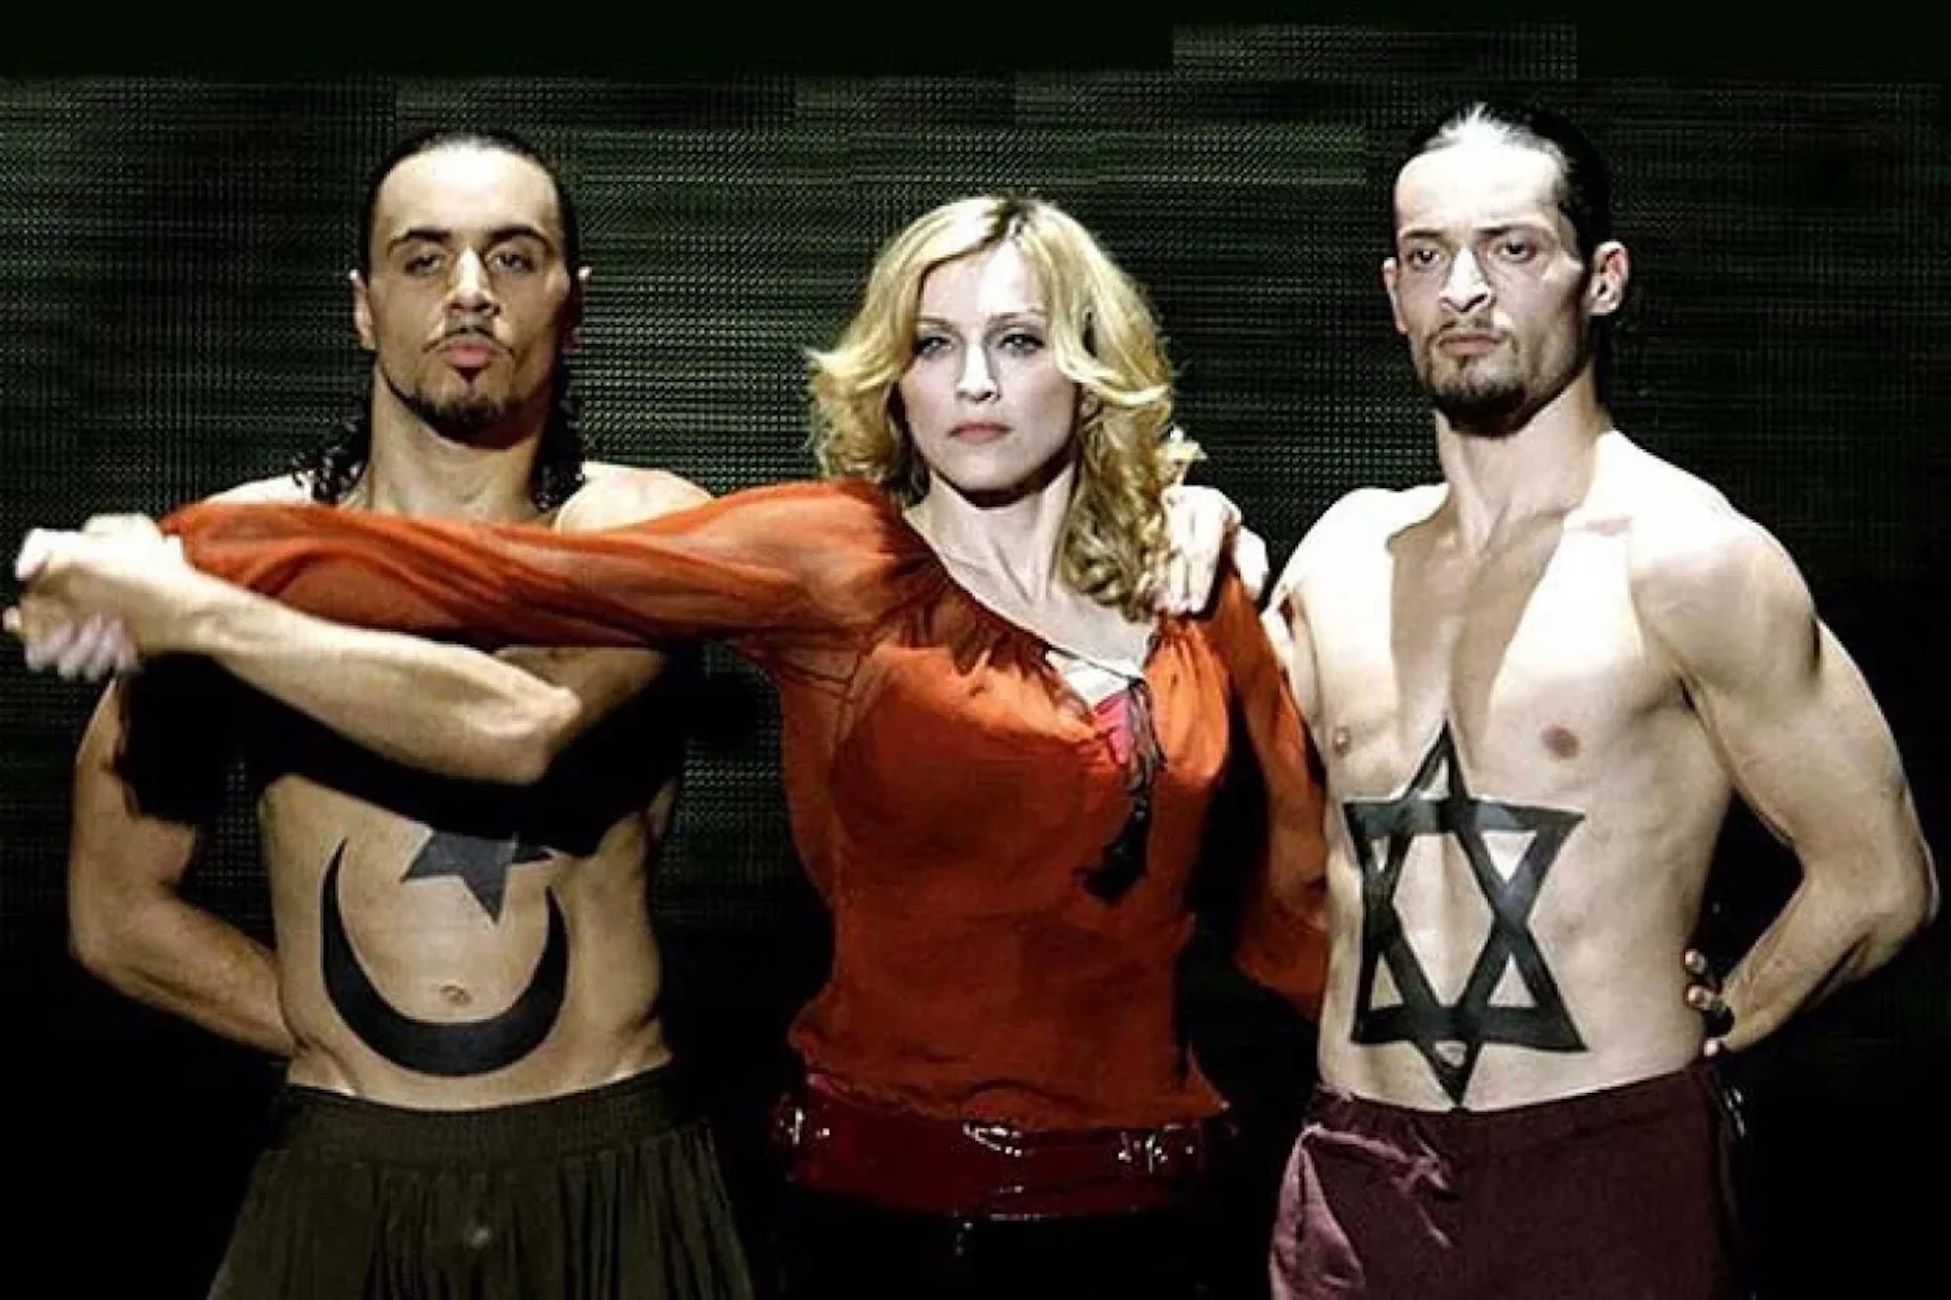 Dard de Madonna a Lady Gaga per una qüestió física